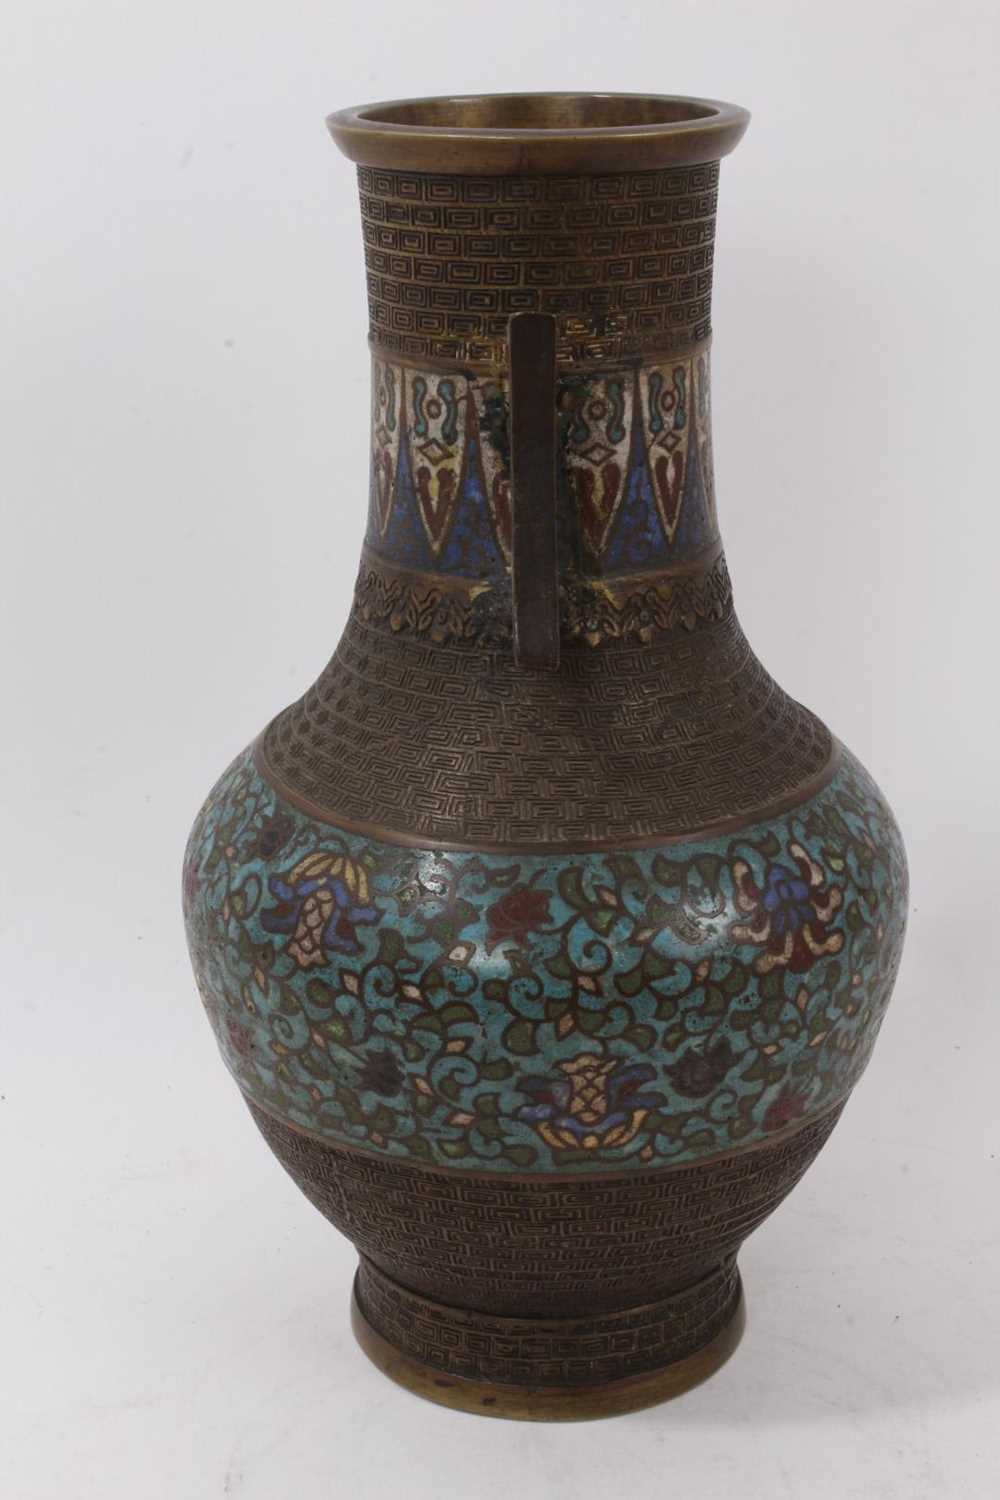 Antique Chinese cloisonné enamel bronze vase - Image 4 of 6